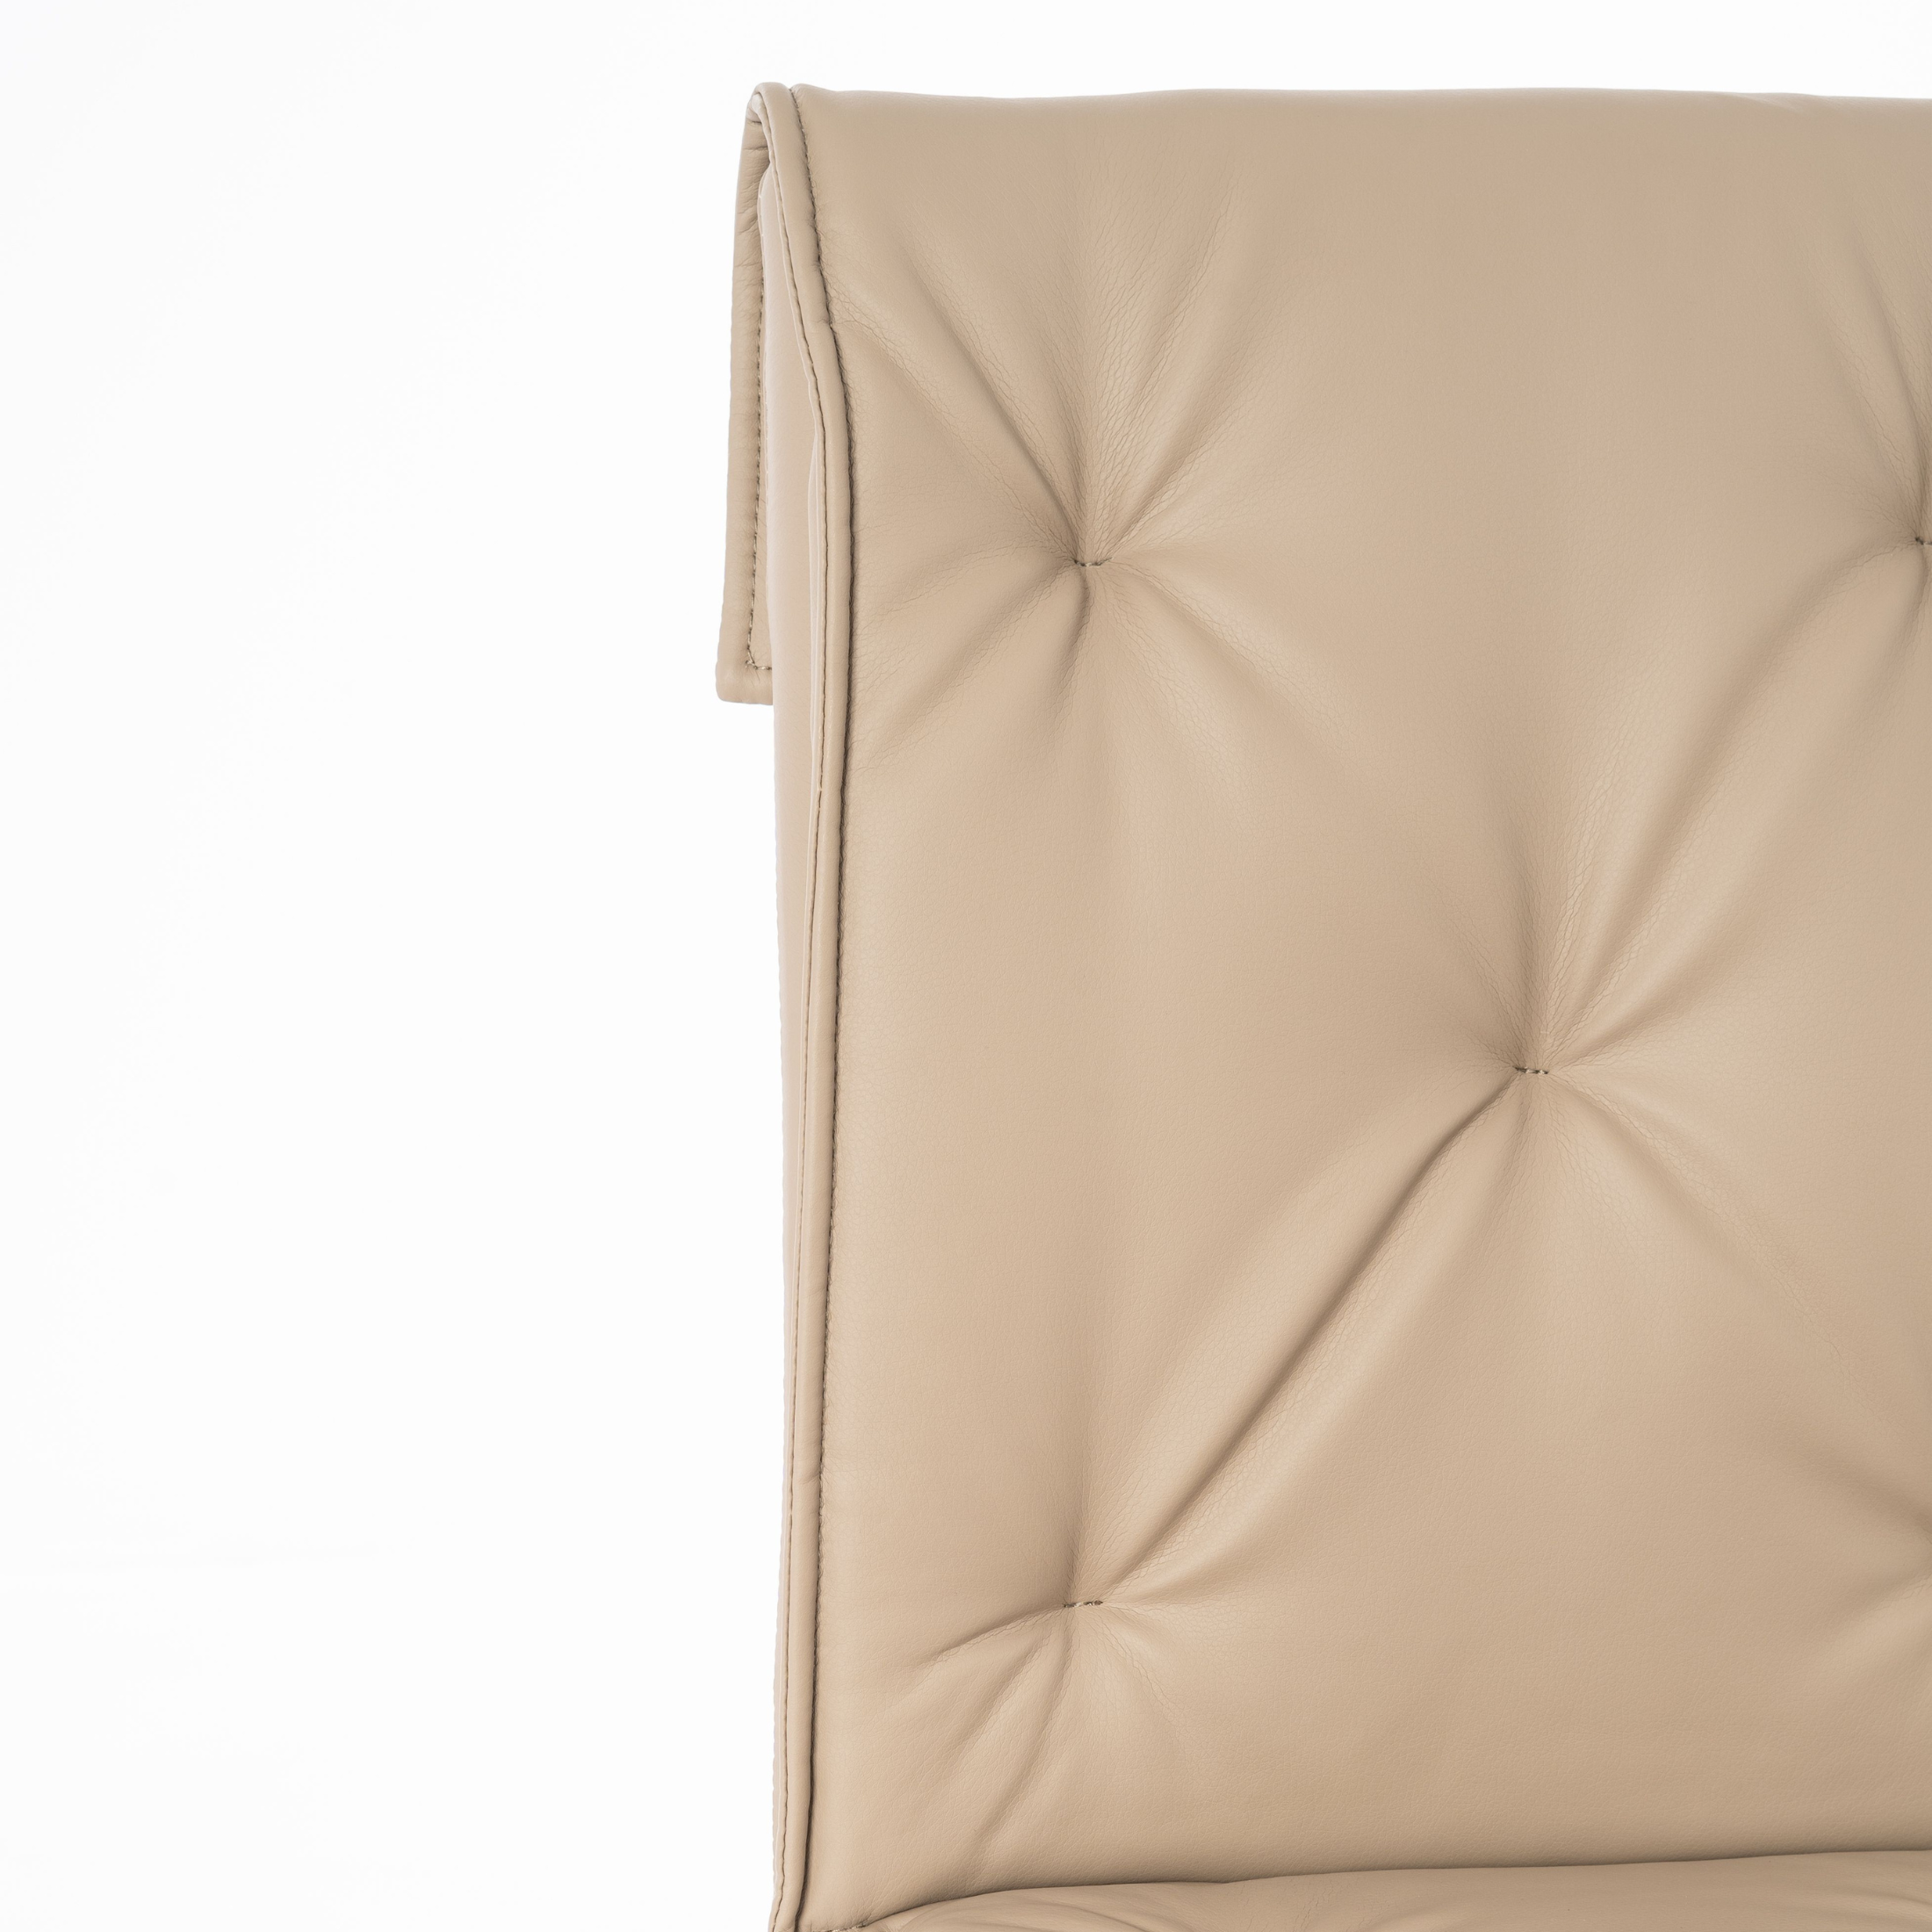 Chaise rembourrée en simili cuir "Carla" fauteuil moderne 56x44 91h cm